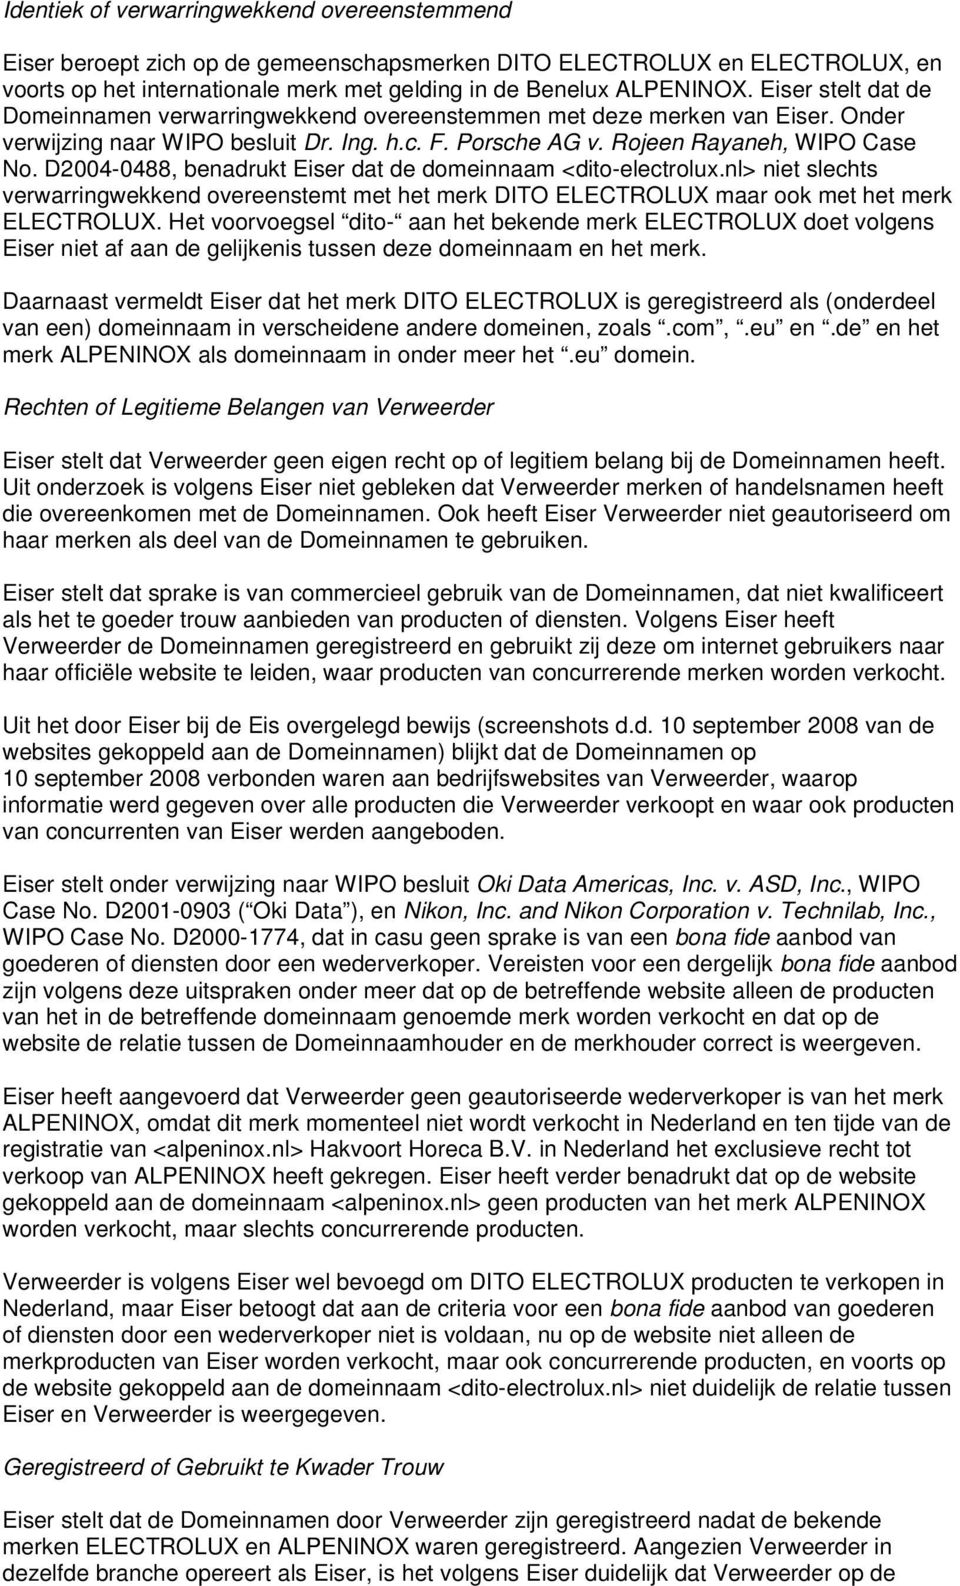 D2004-0488, benadrukt Eiser dat de domeinnaam <dito-electrolux.nl> niet slechts verwarringwekkend overeenstemt met het merk DITO ELECTROLUX maar ook met het merk ELECTROLUX.